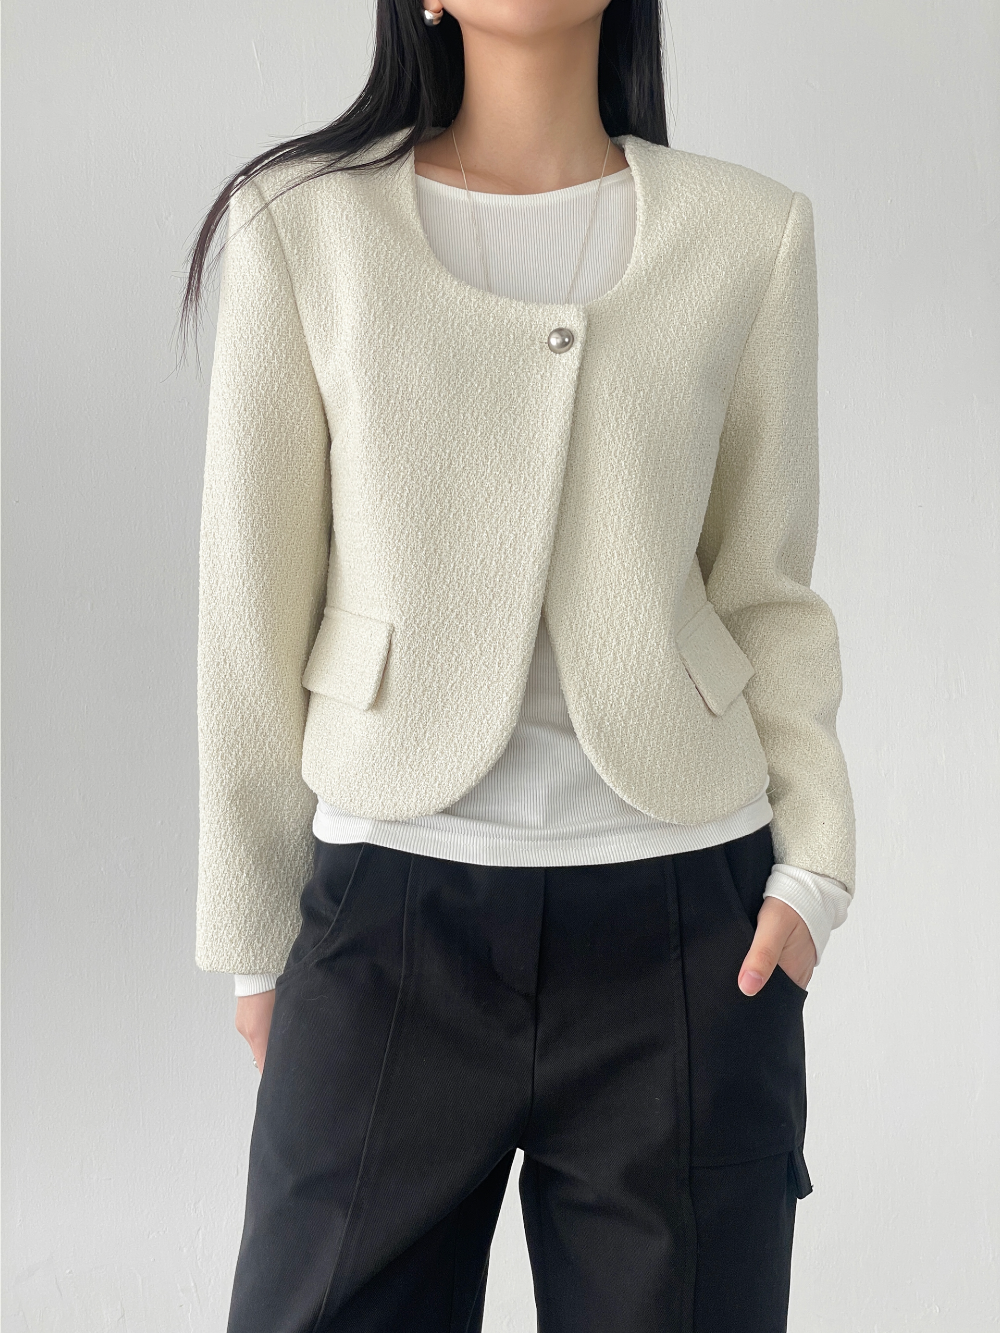 curved tweed jacket (2color)